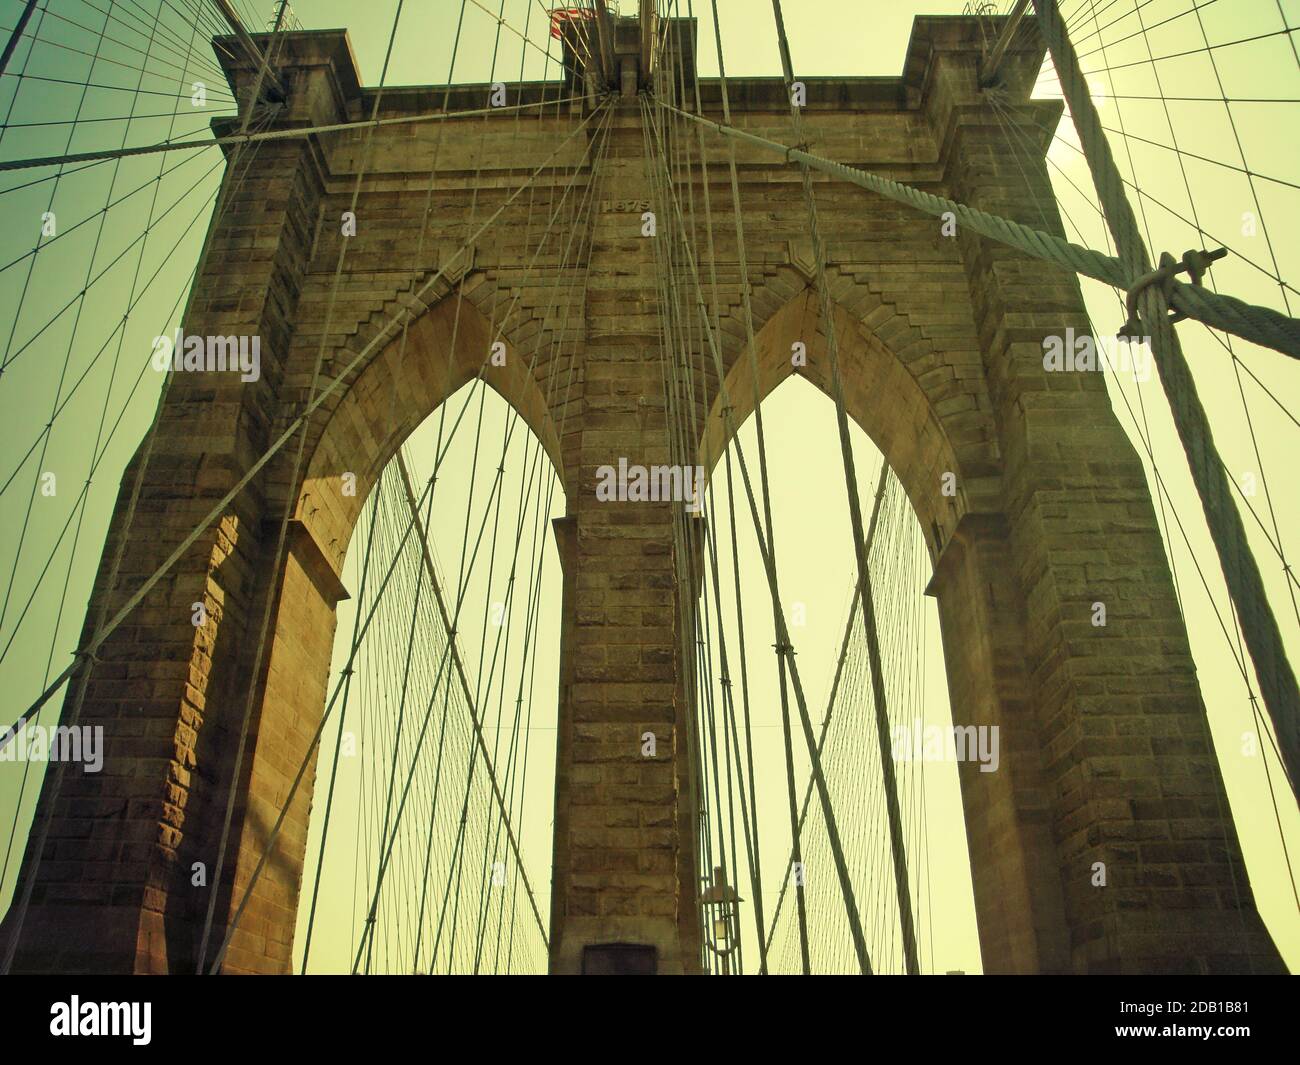 Detail eines der neogotischen Kalksteintürme mit den abgehängten Kabeln der Brooklyn Bridge, dem berühmten Wahrzeichen von New York am East River. Stockfoto